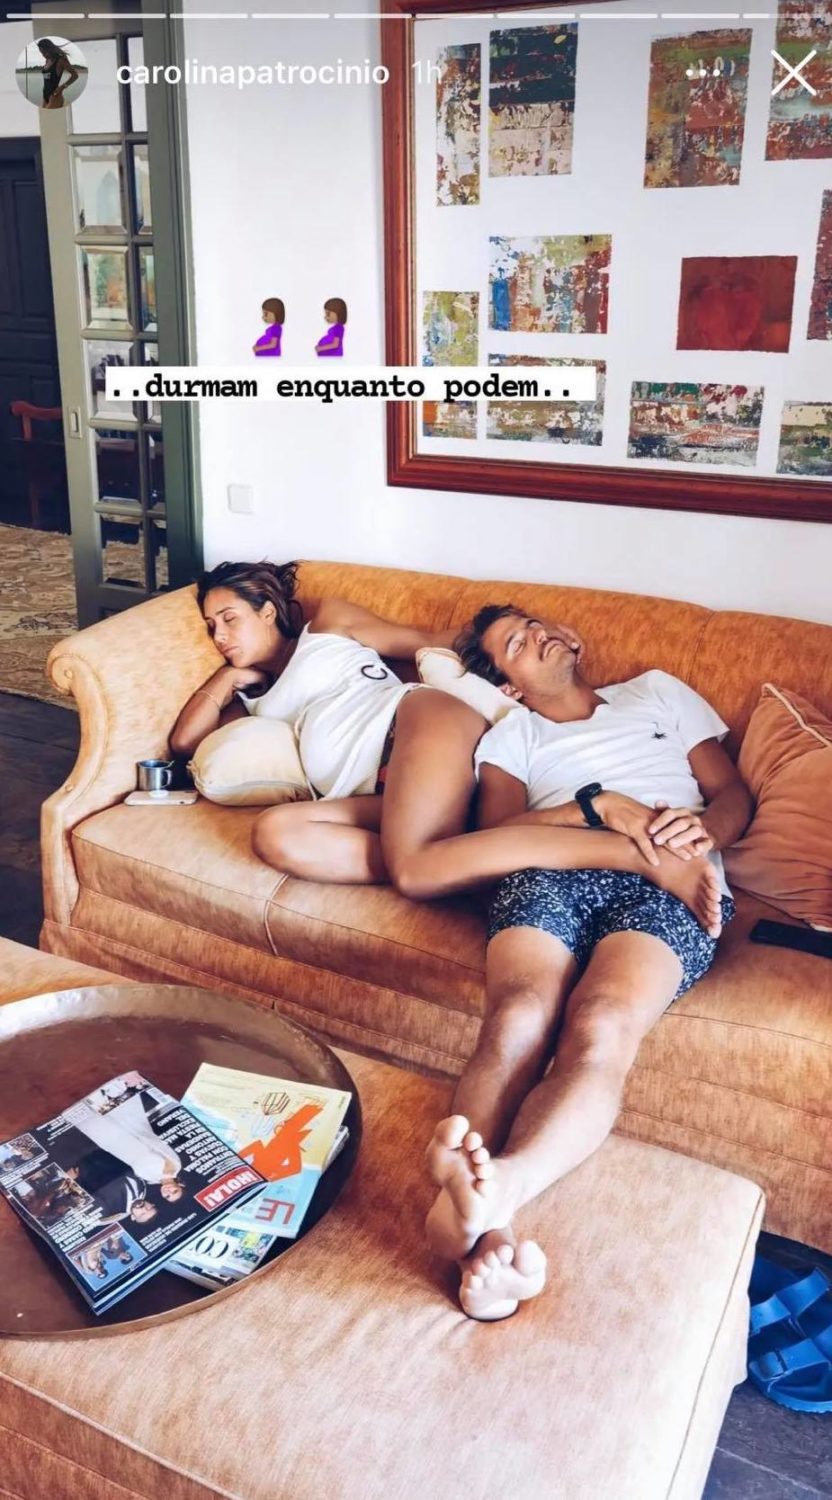 Carolina Patrocínio revela foto da irmã e Tiago Teotónio Pereira: &#8220;Durmam enquanto podem&#8221;